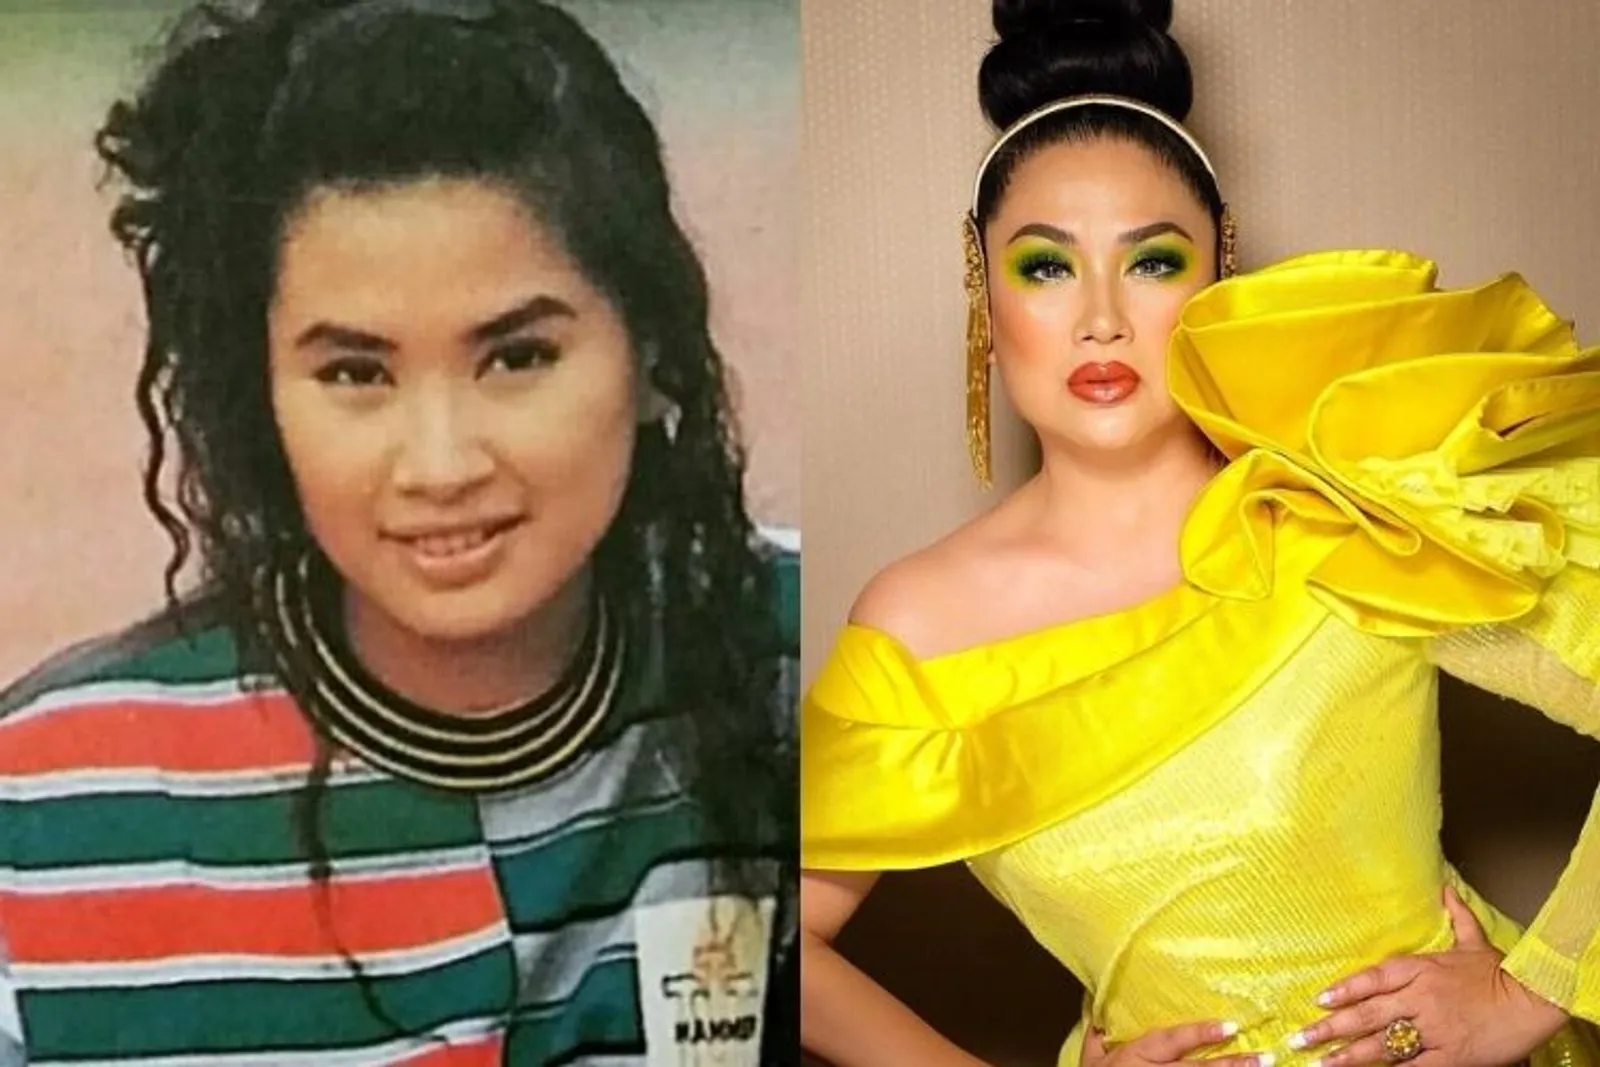 Gaya Diva Pop Indonesia Dulu vs Sekarang, Makin Kece!